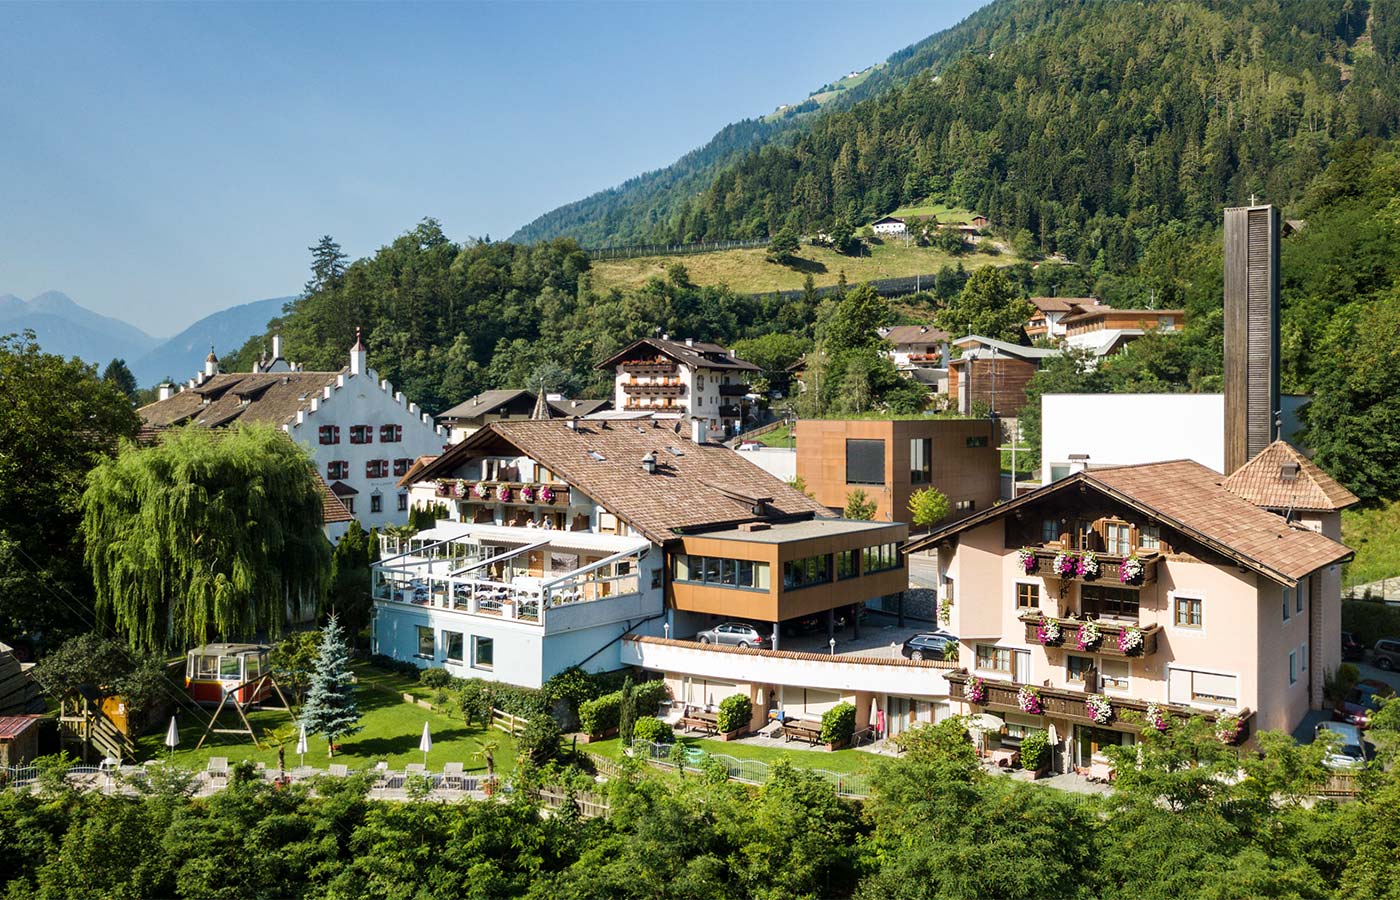 Blick auf das Hotel Alpenhof im PAsseiertal und auf die direkt umliegende Umgebung an einem wolkenlosen Sommertag